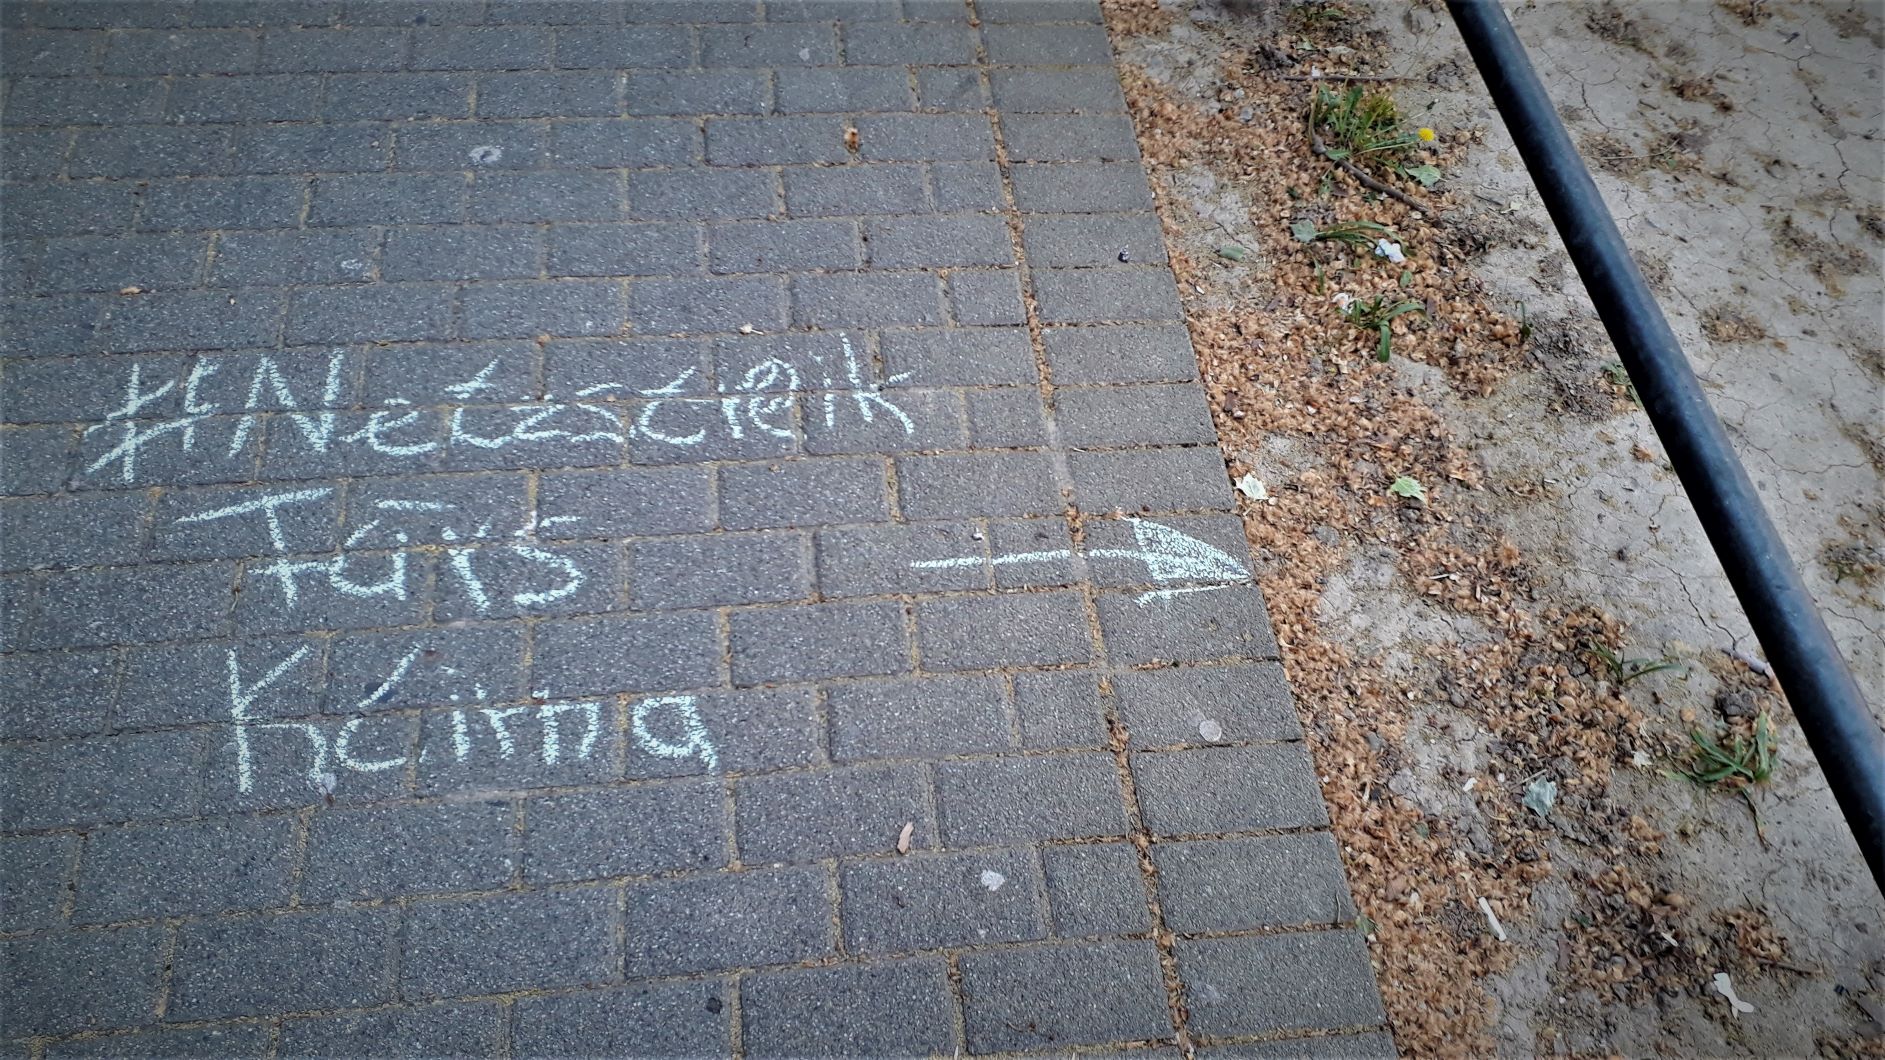 Eine Kreidebotschaft "#Netzstreik fürs Klima" ist auf einen Bürgersteig gemalt mit einem Pfeil zum rissigen, ausgetrockneten Beet-Boden daneben